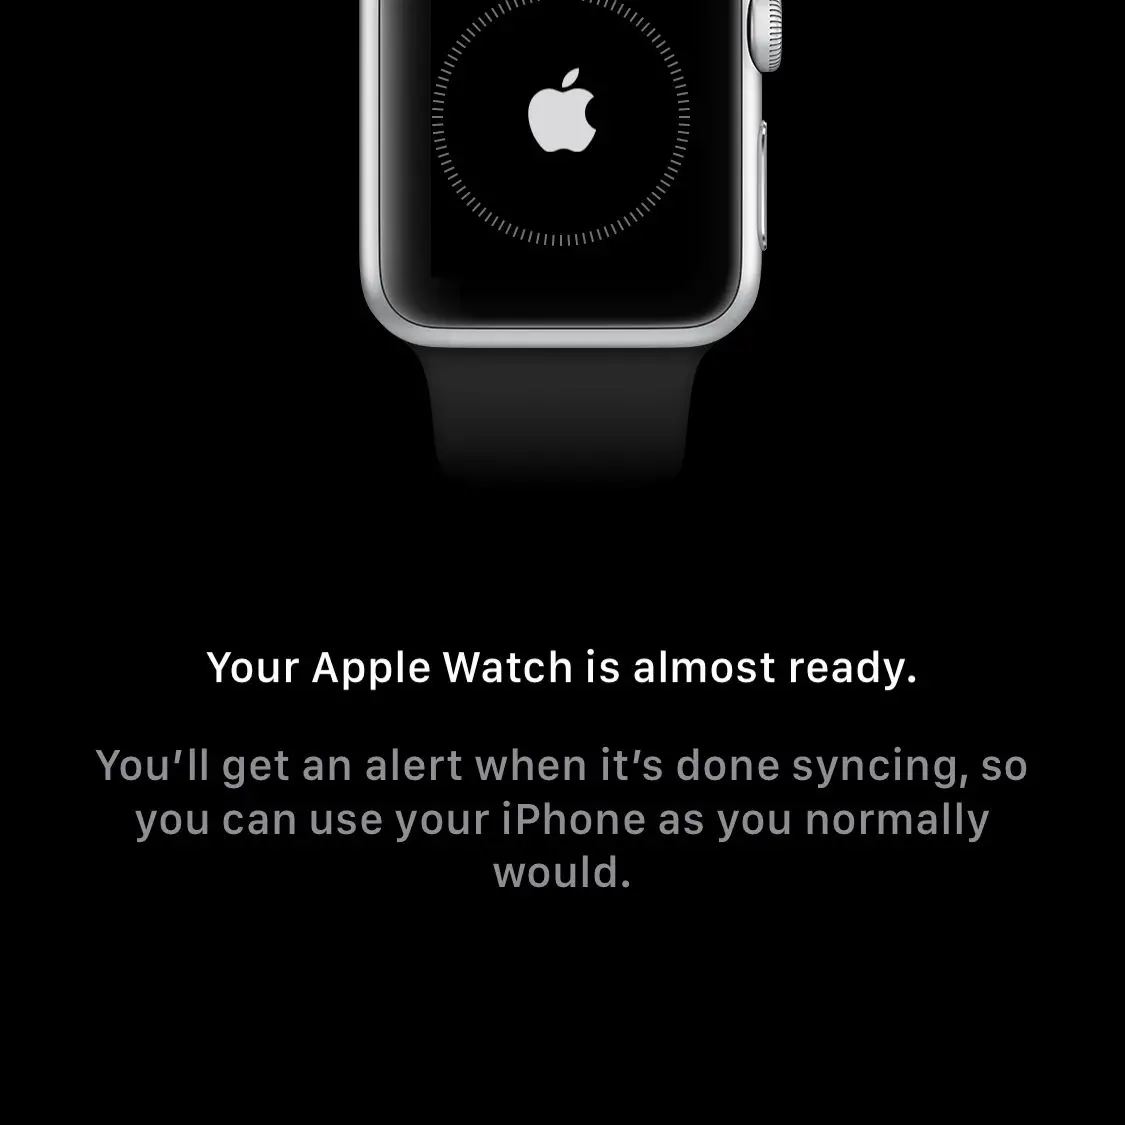 Uma tela mostrando o Apple Watch e o iPhone sincronizando um com o outro